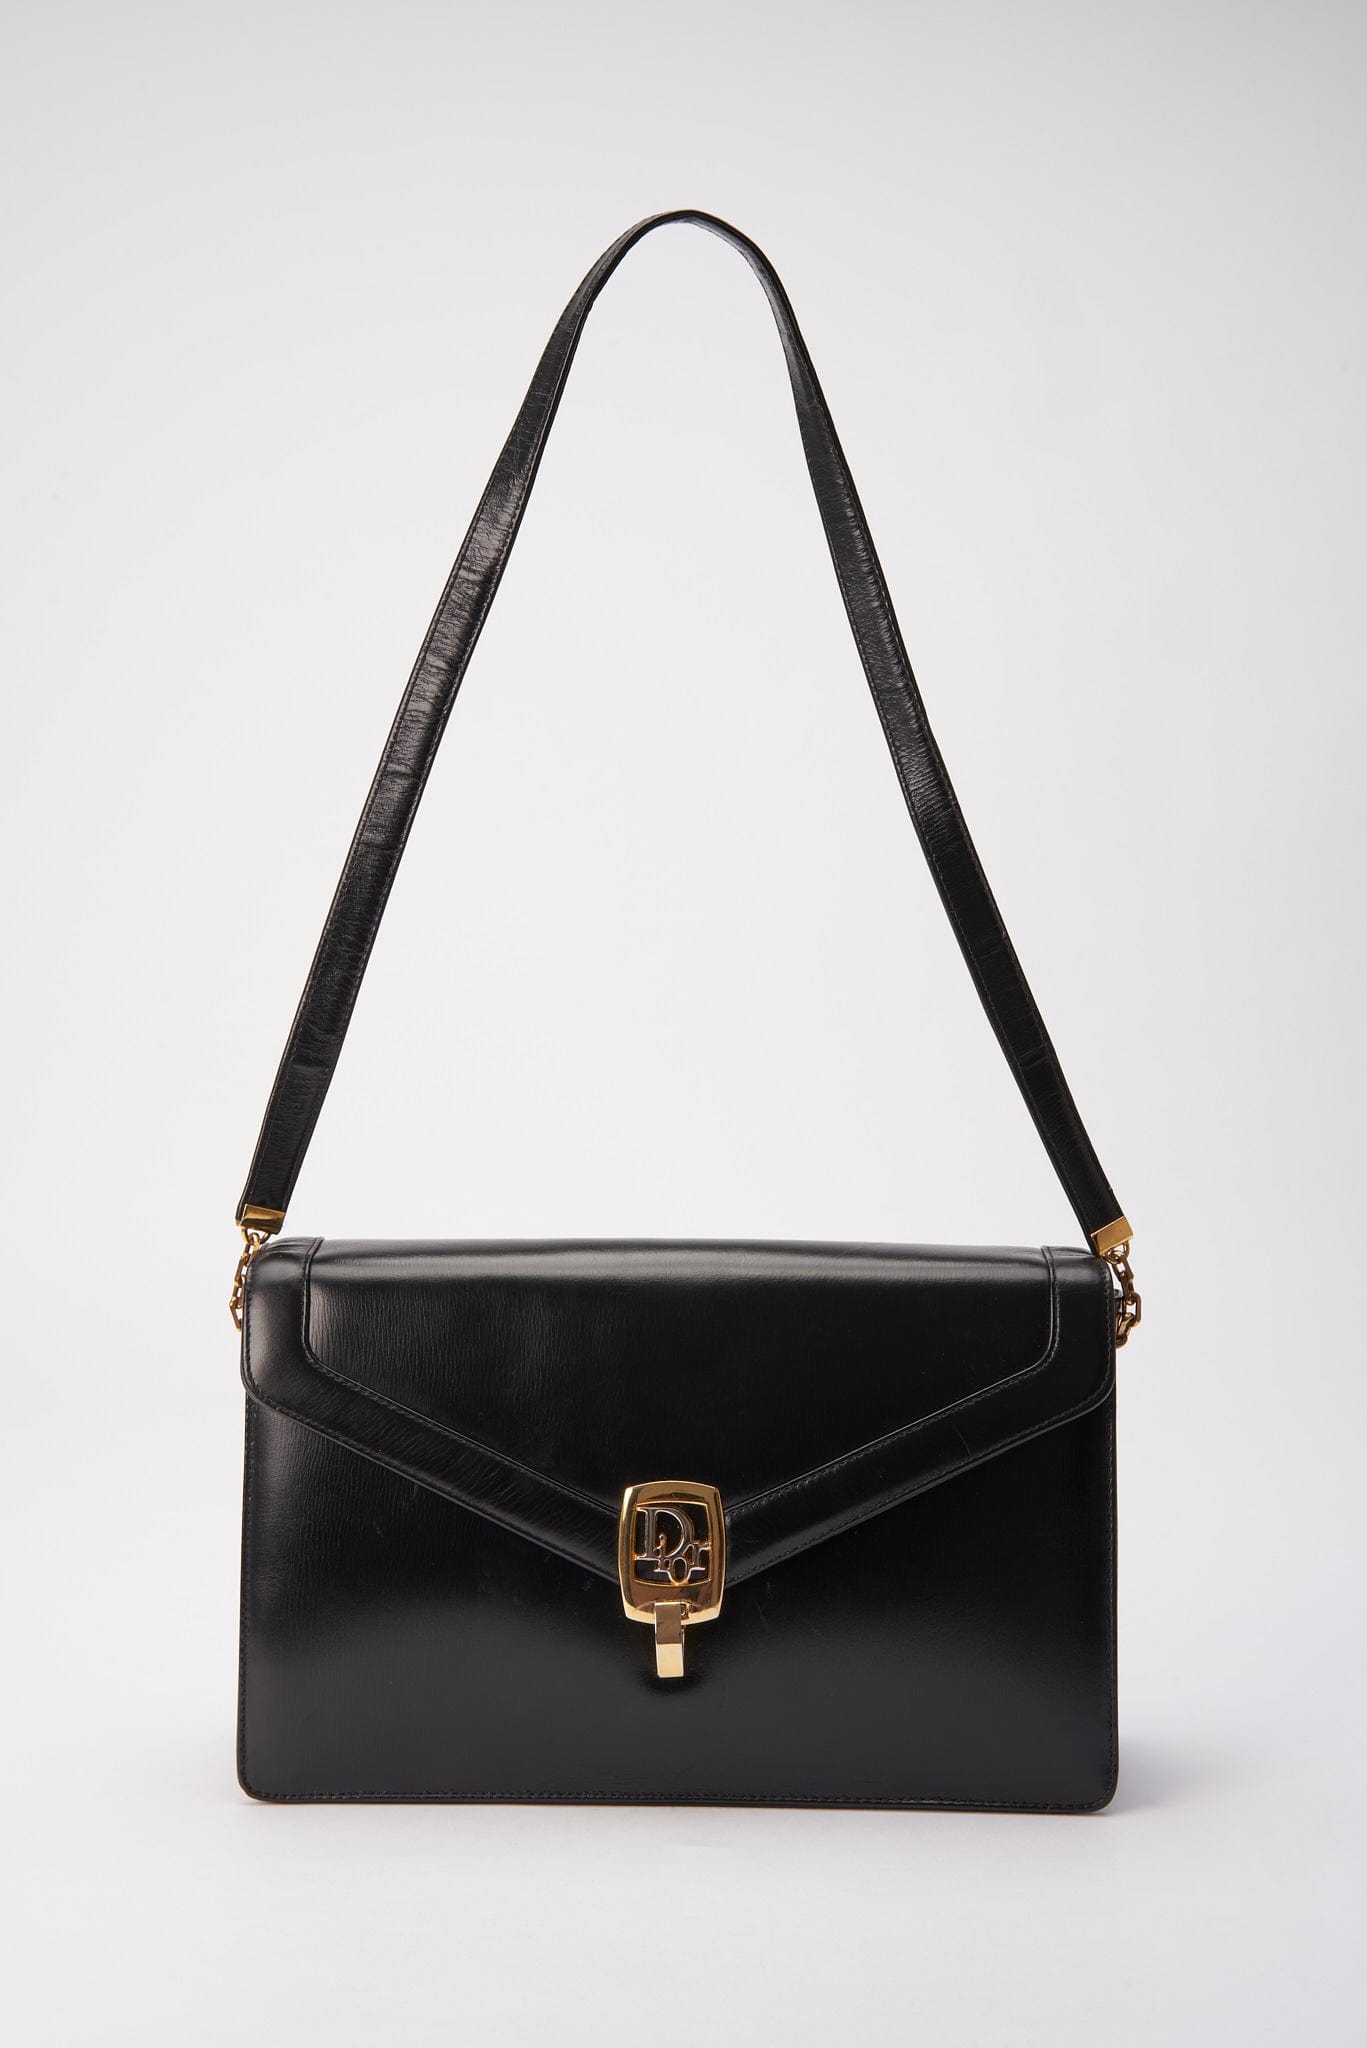 Vintage Dior Black Leather Bag